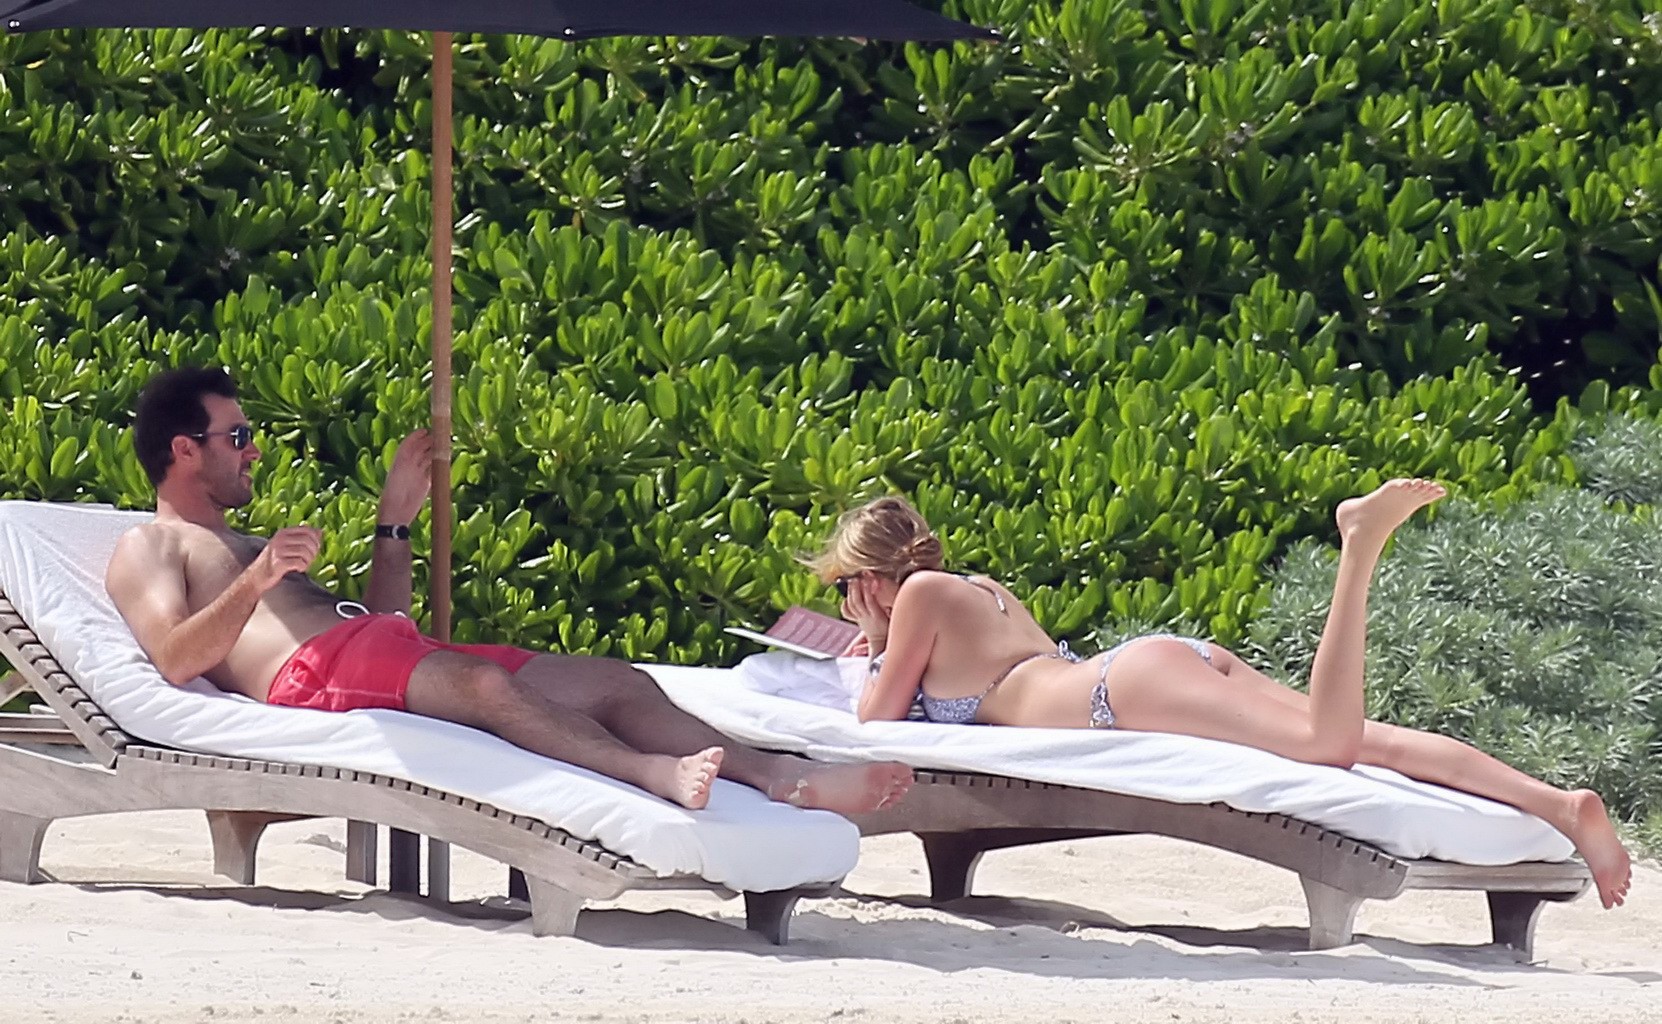 Kate upton che abbronza i suoi meloni lattei e il suo culo in bikini d'argento alla spiaggia in mex
 #75190894